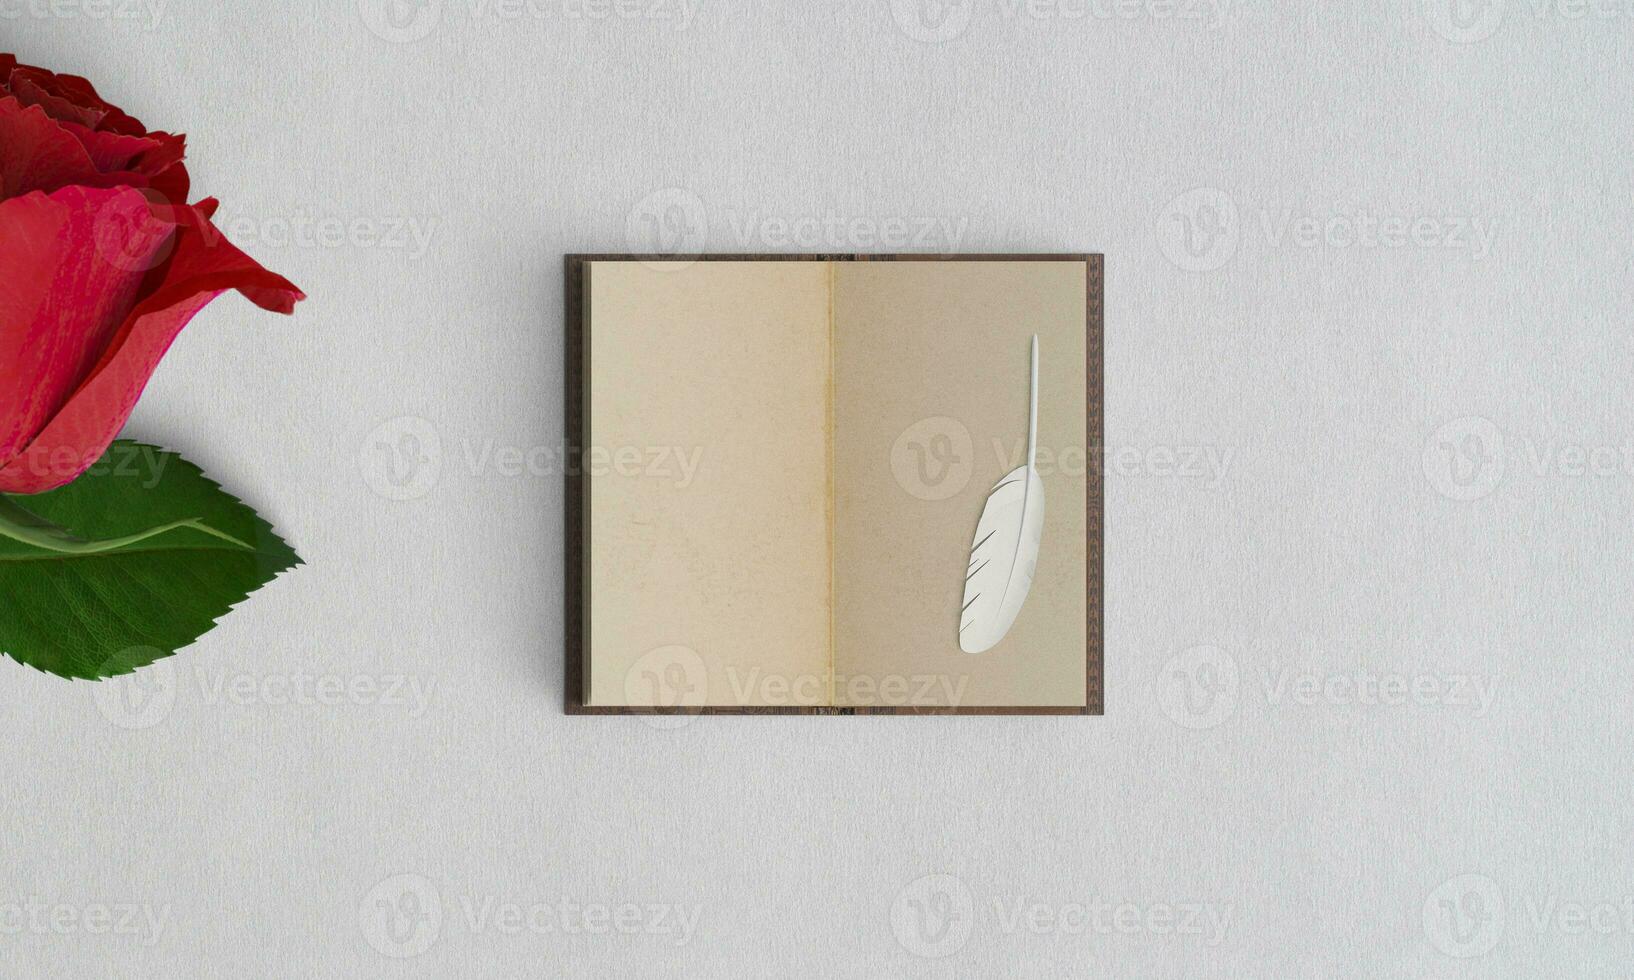 rosa e velho livro esvaziar tela papel de parede branco papel textura foto